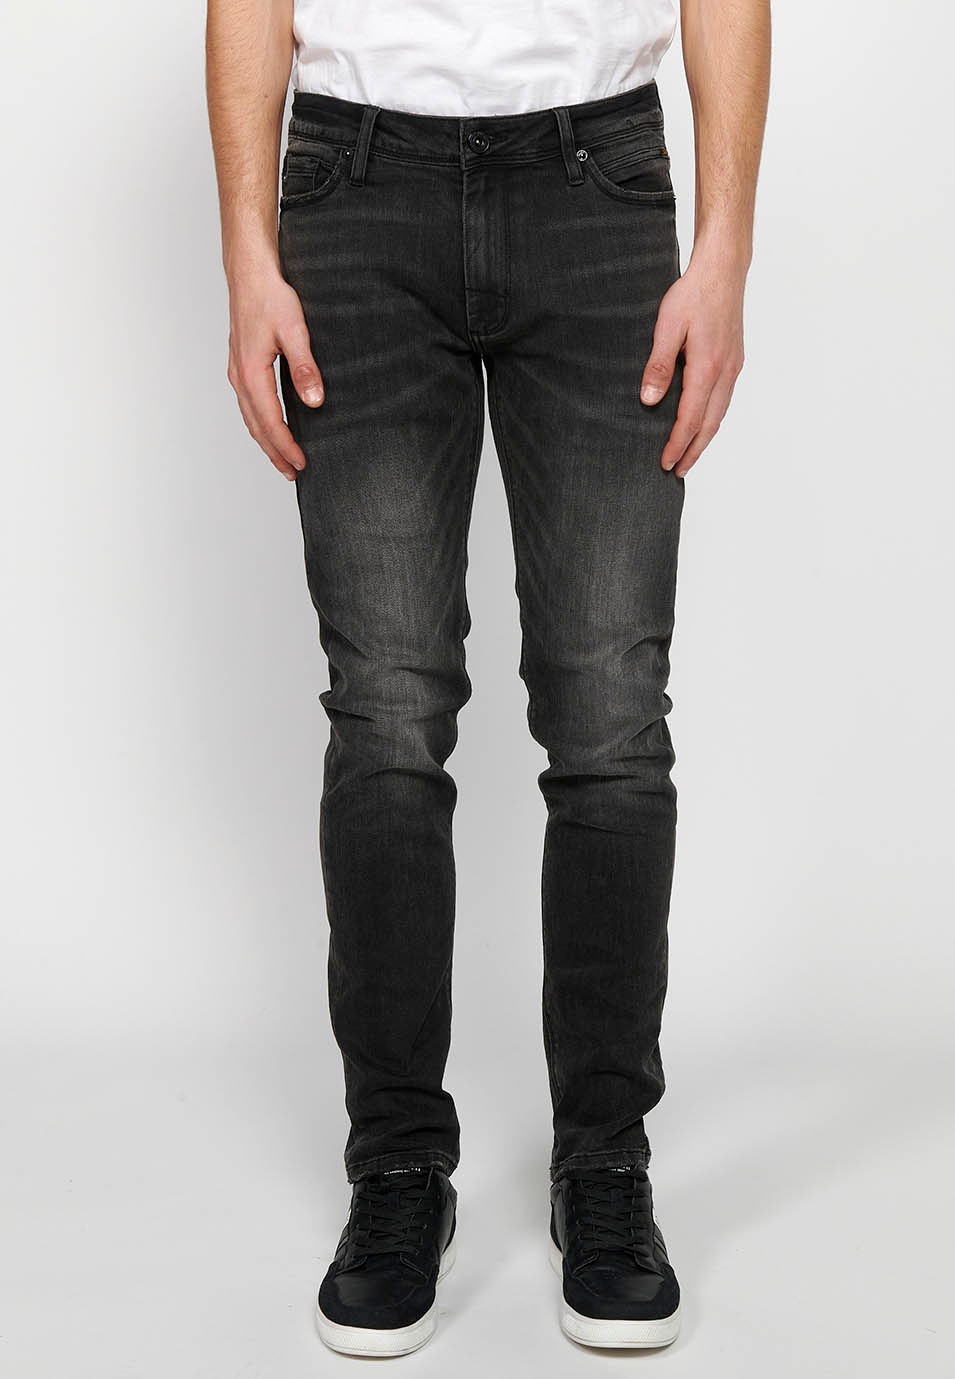 Pantalón jeans largo straigth regular fit con Cierre delantero con cremallera y botón de Color Denim Negro para Hombre 4